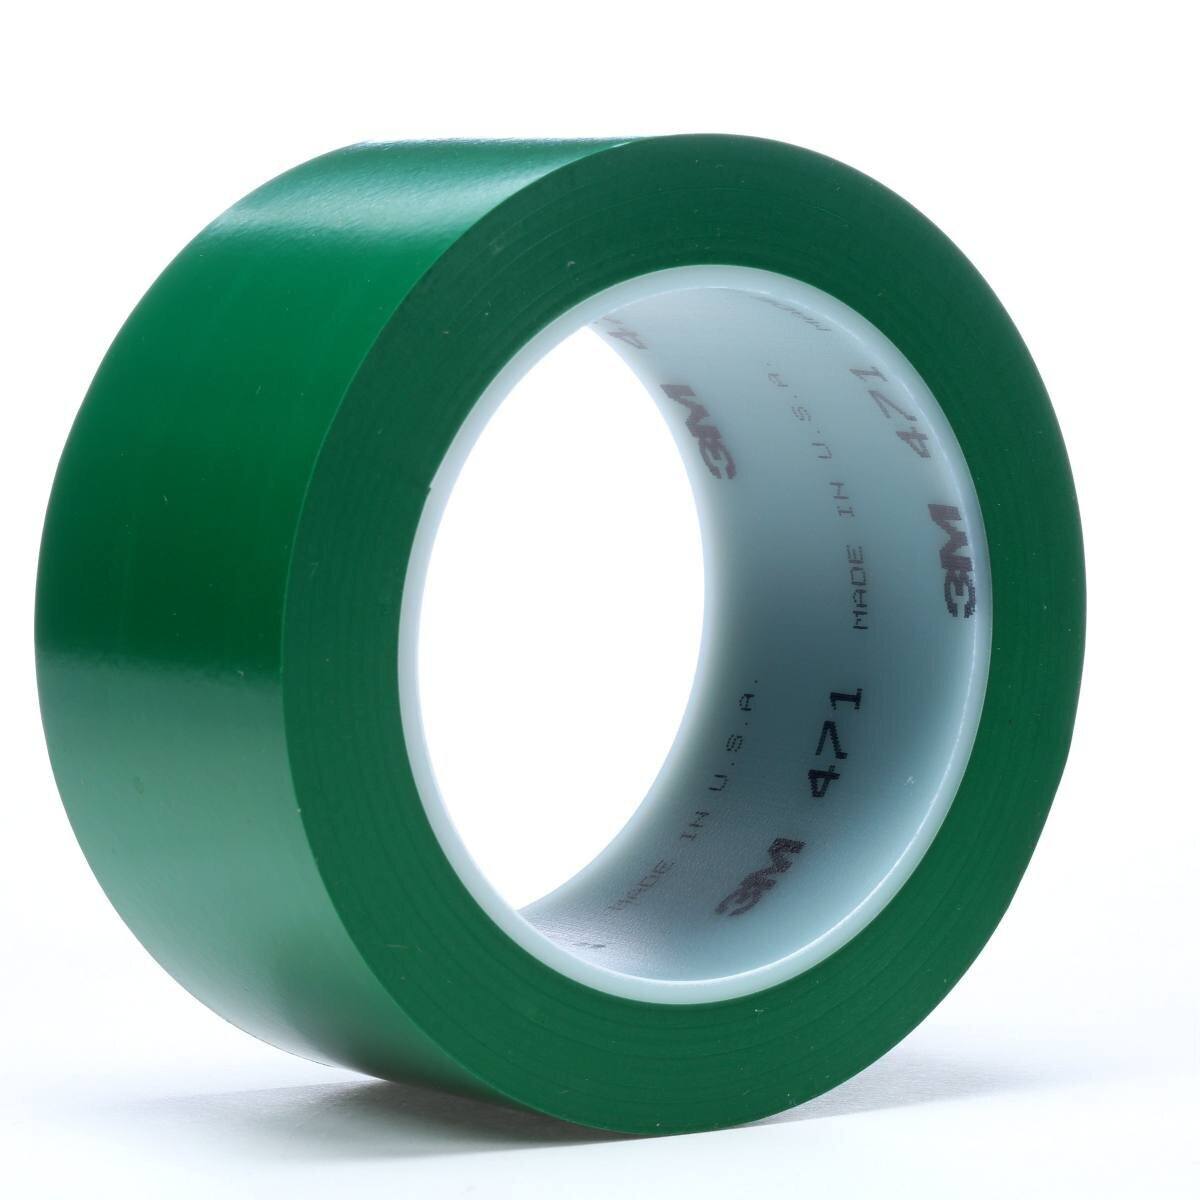 Nastro adesivo 3M in PVC morbido 471 F, verde, 50 mm x 33 m, 0,13 mm